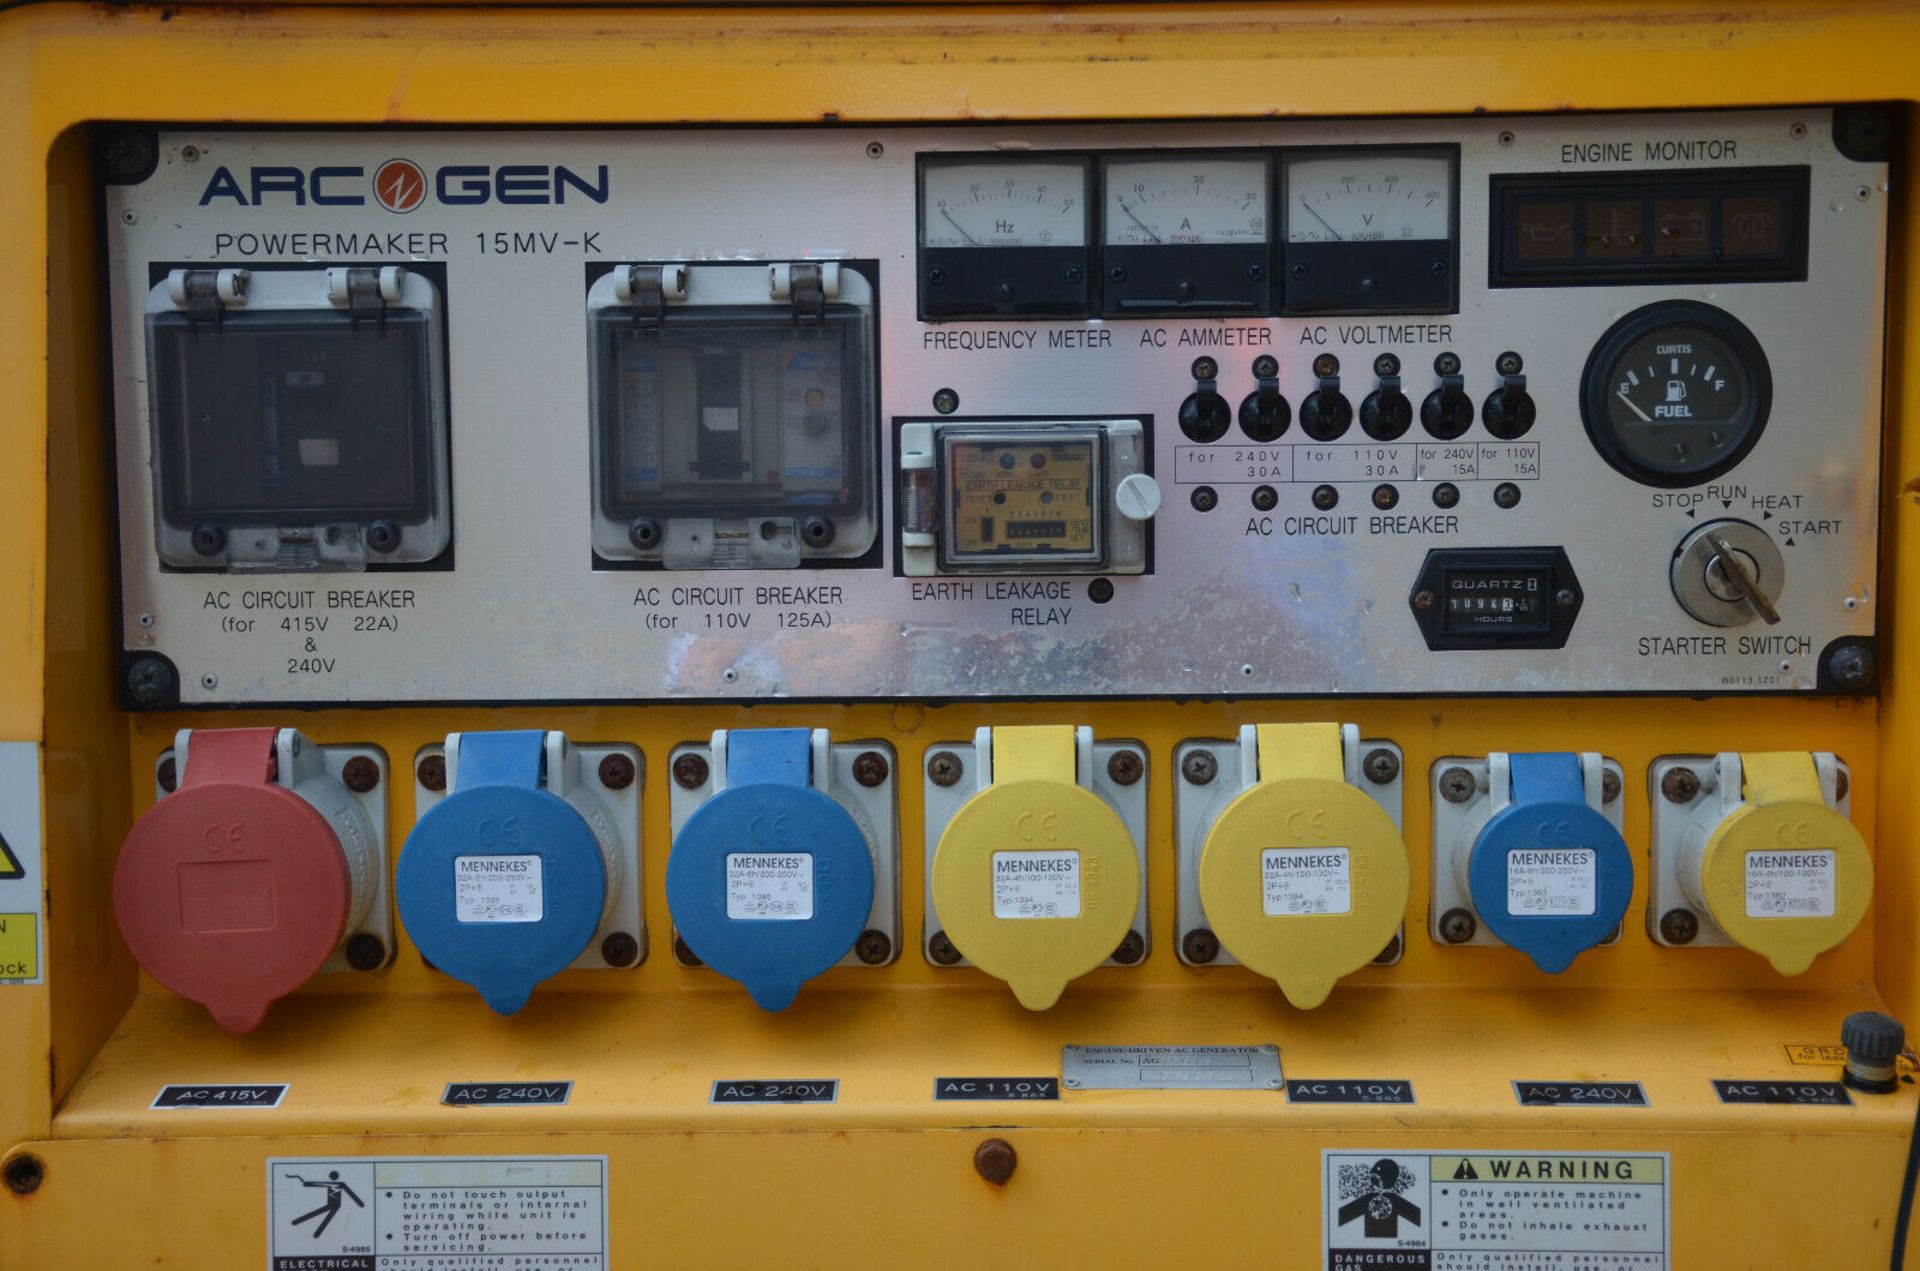 ArcGen Powermaker 15MV-K Generator 2014 - Image 5 of 11